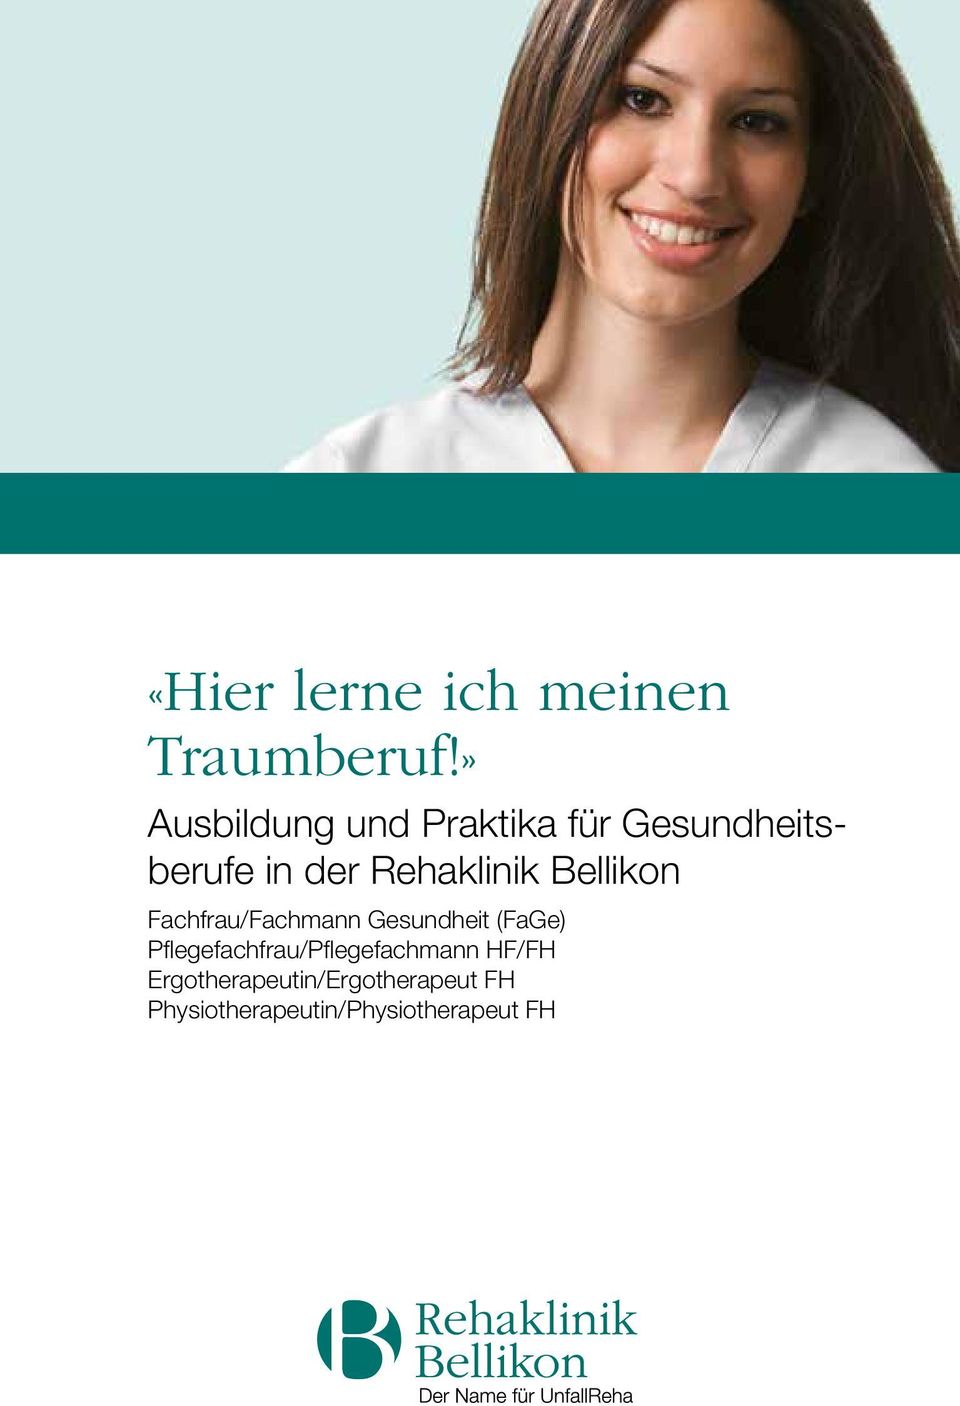 Rehaklinik Bellikon Fachfrau/Fachmann Gesundheit (FaGe)